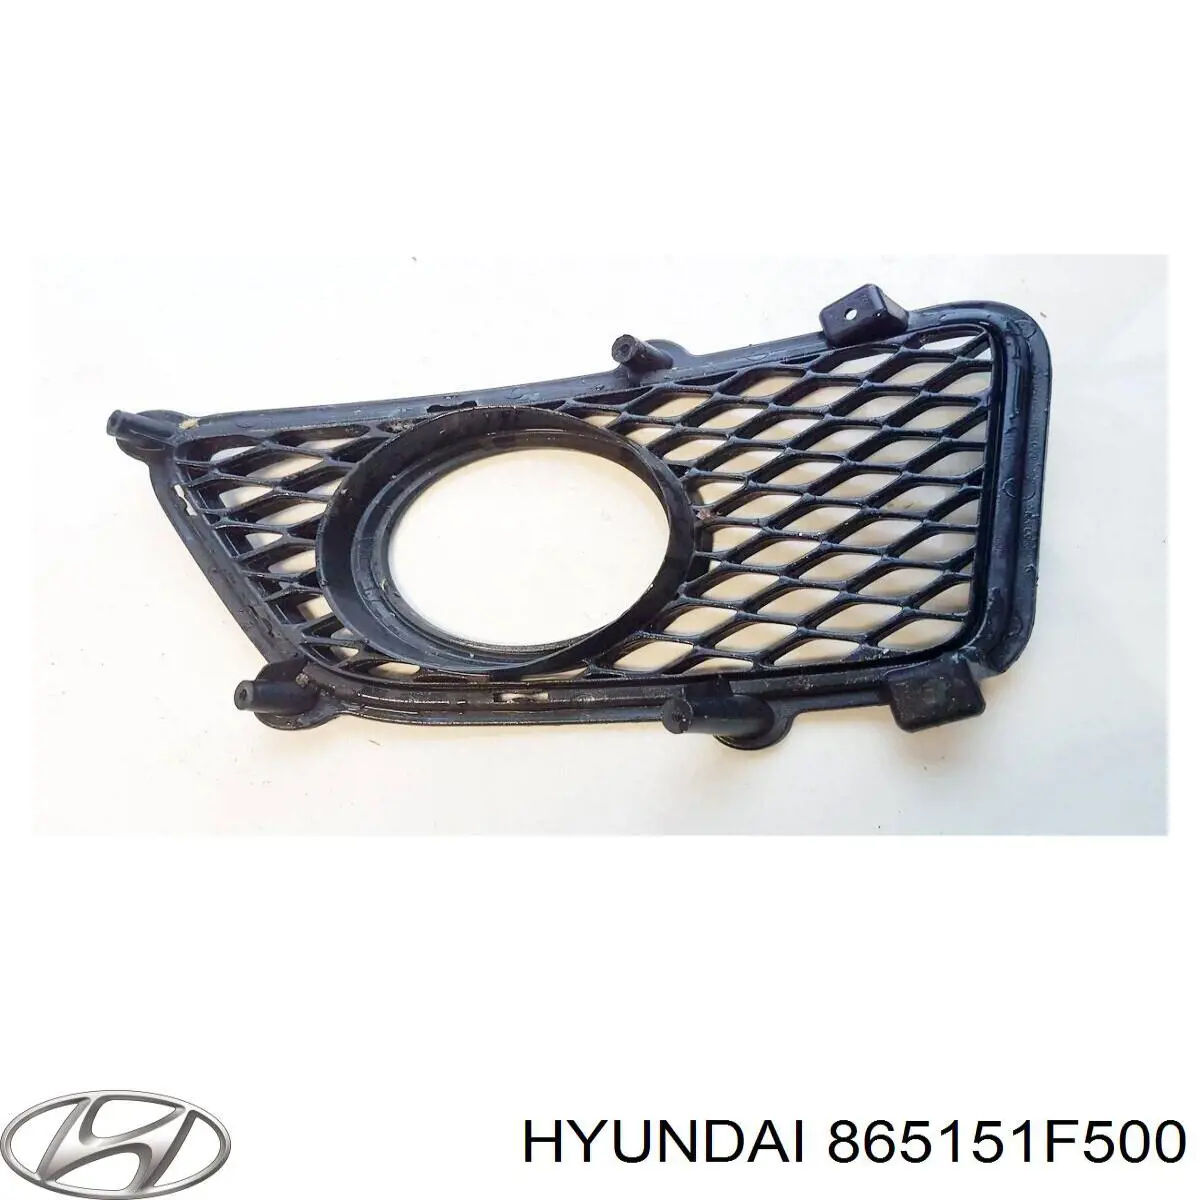 865151F500 Hyundai/Kia rejilla de ventilación, parachoques trasero, izquierda